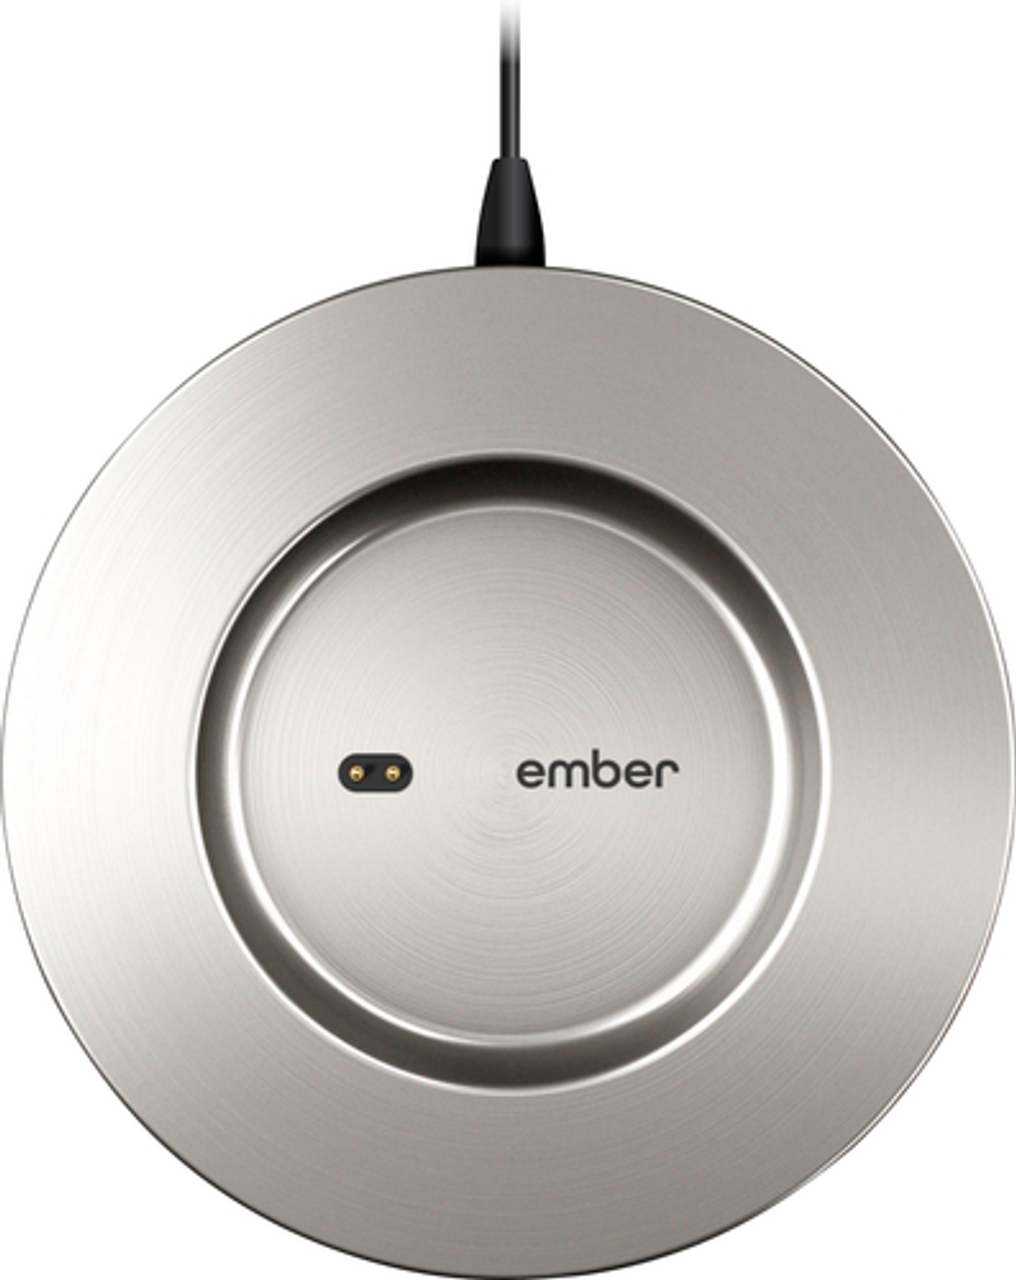 Ember - Mug² Charging Coaster - Stainless